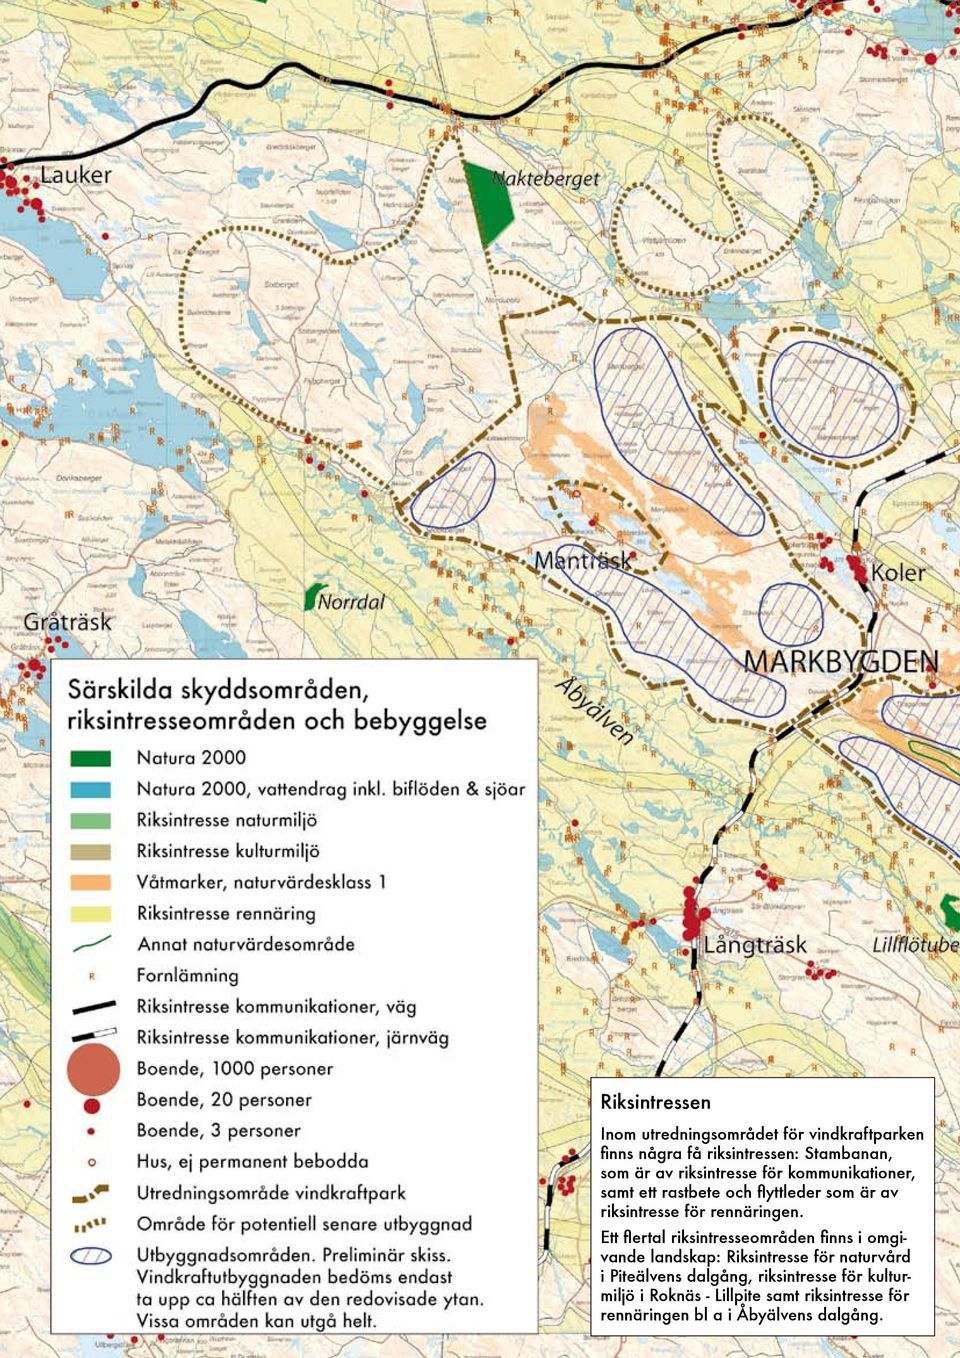 Ett flertal riksintresseområden finns i omgivande landskap: Riksintresse för naturvård i Piteälvens